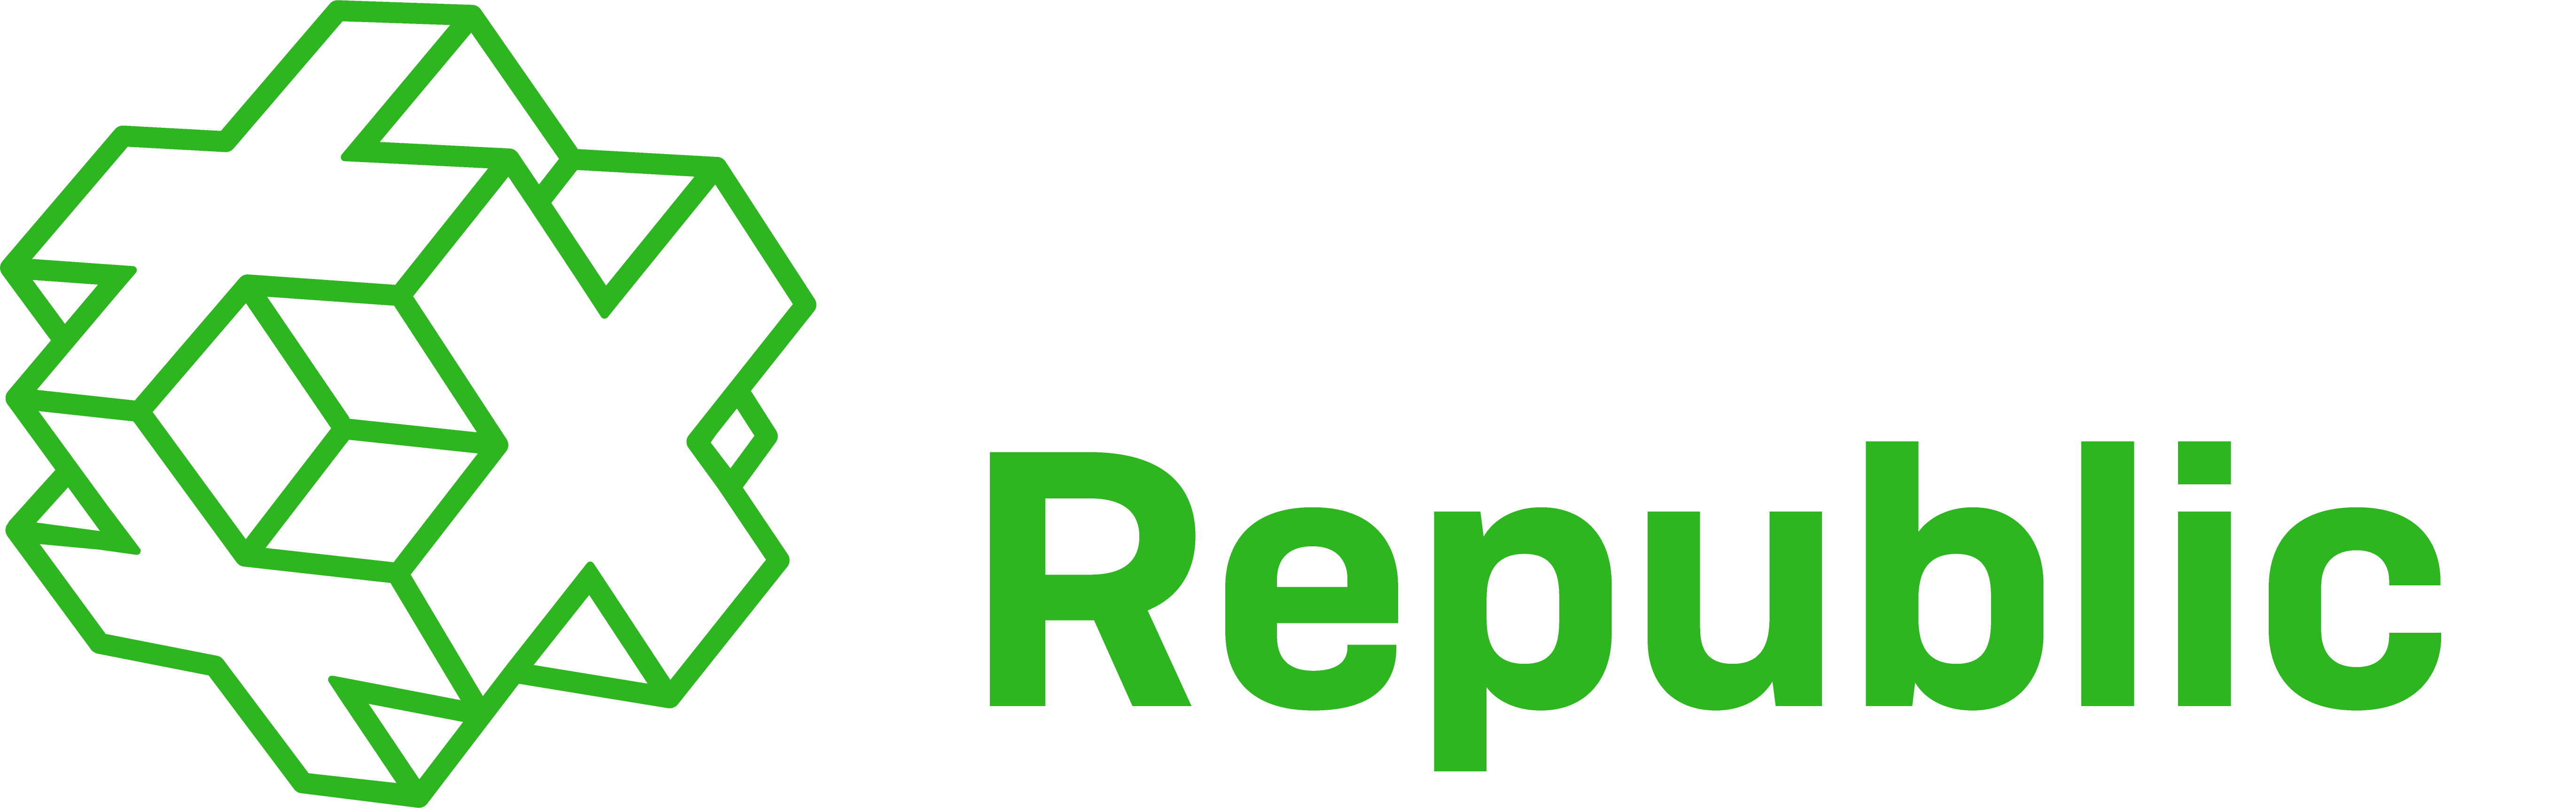 Talent Republic